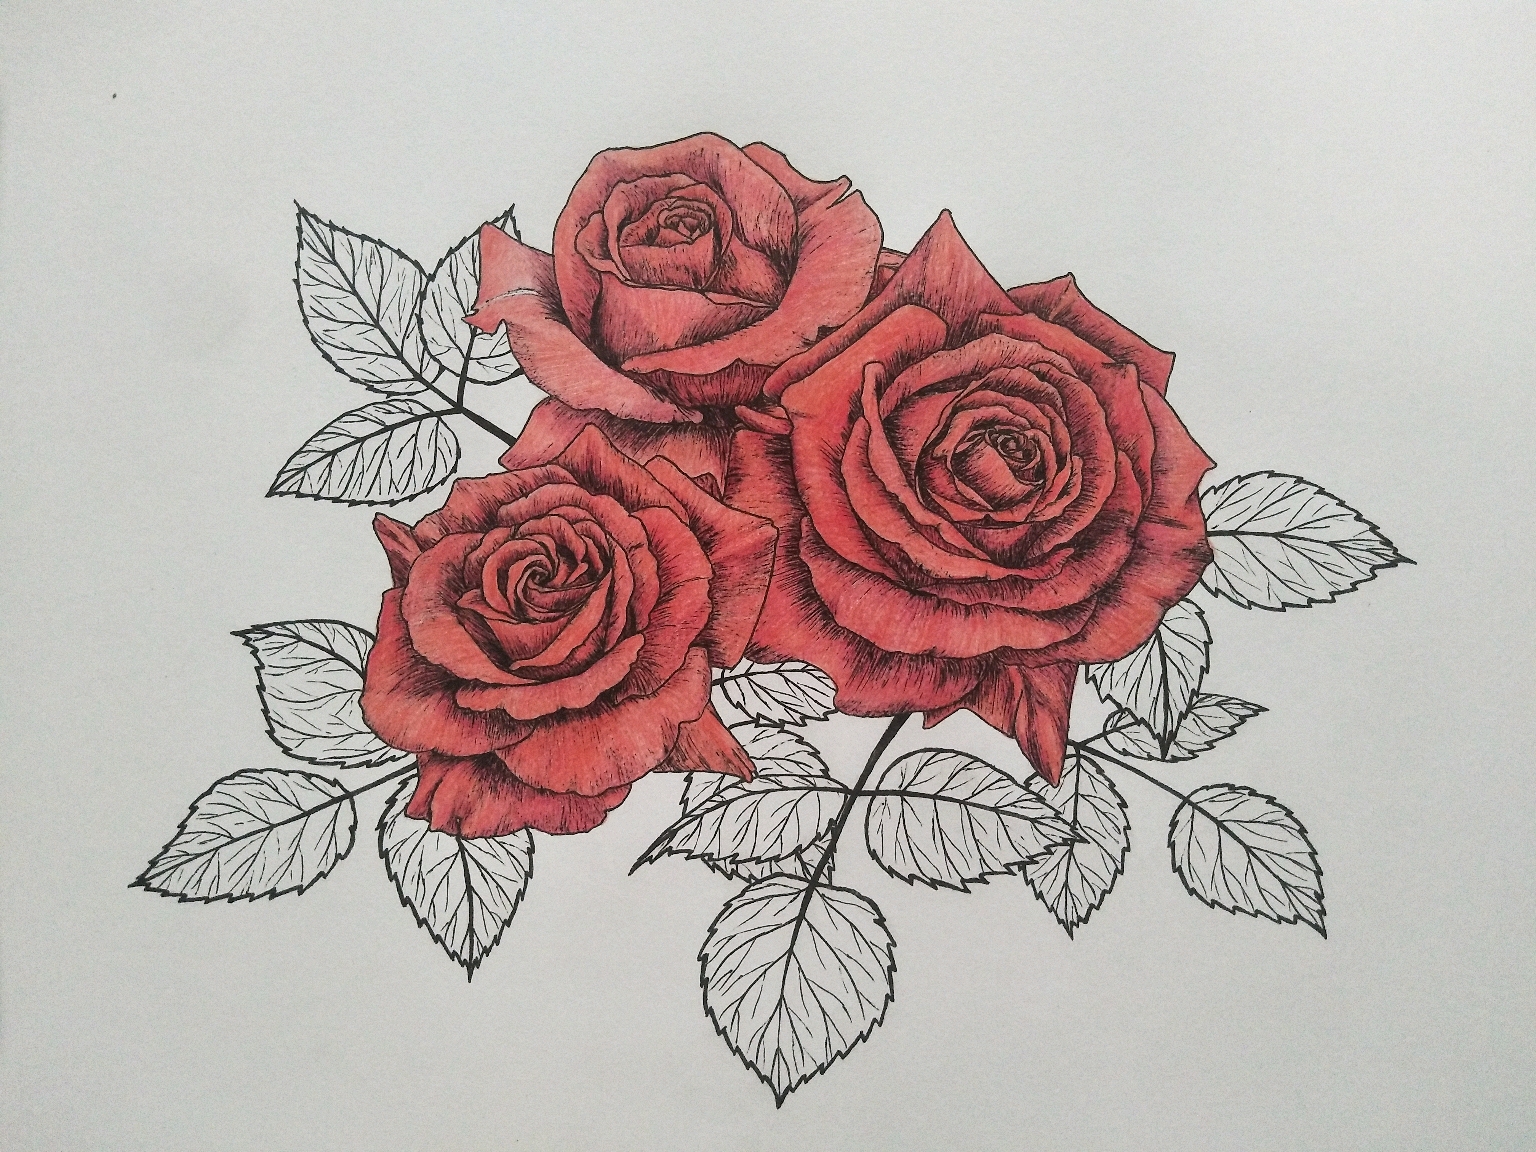 彩铅线描花卉象征着热烈爱意的红玫瑰